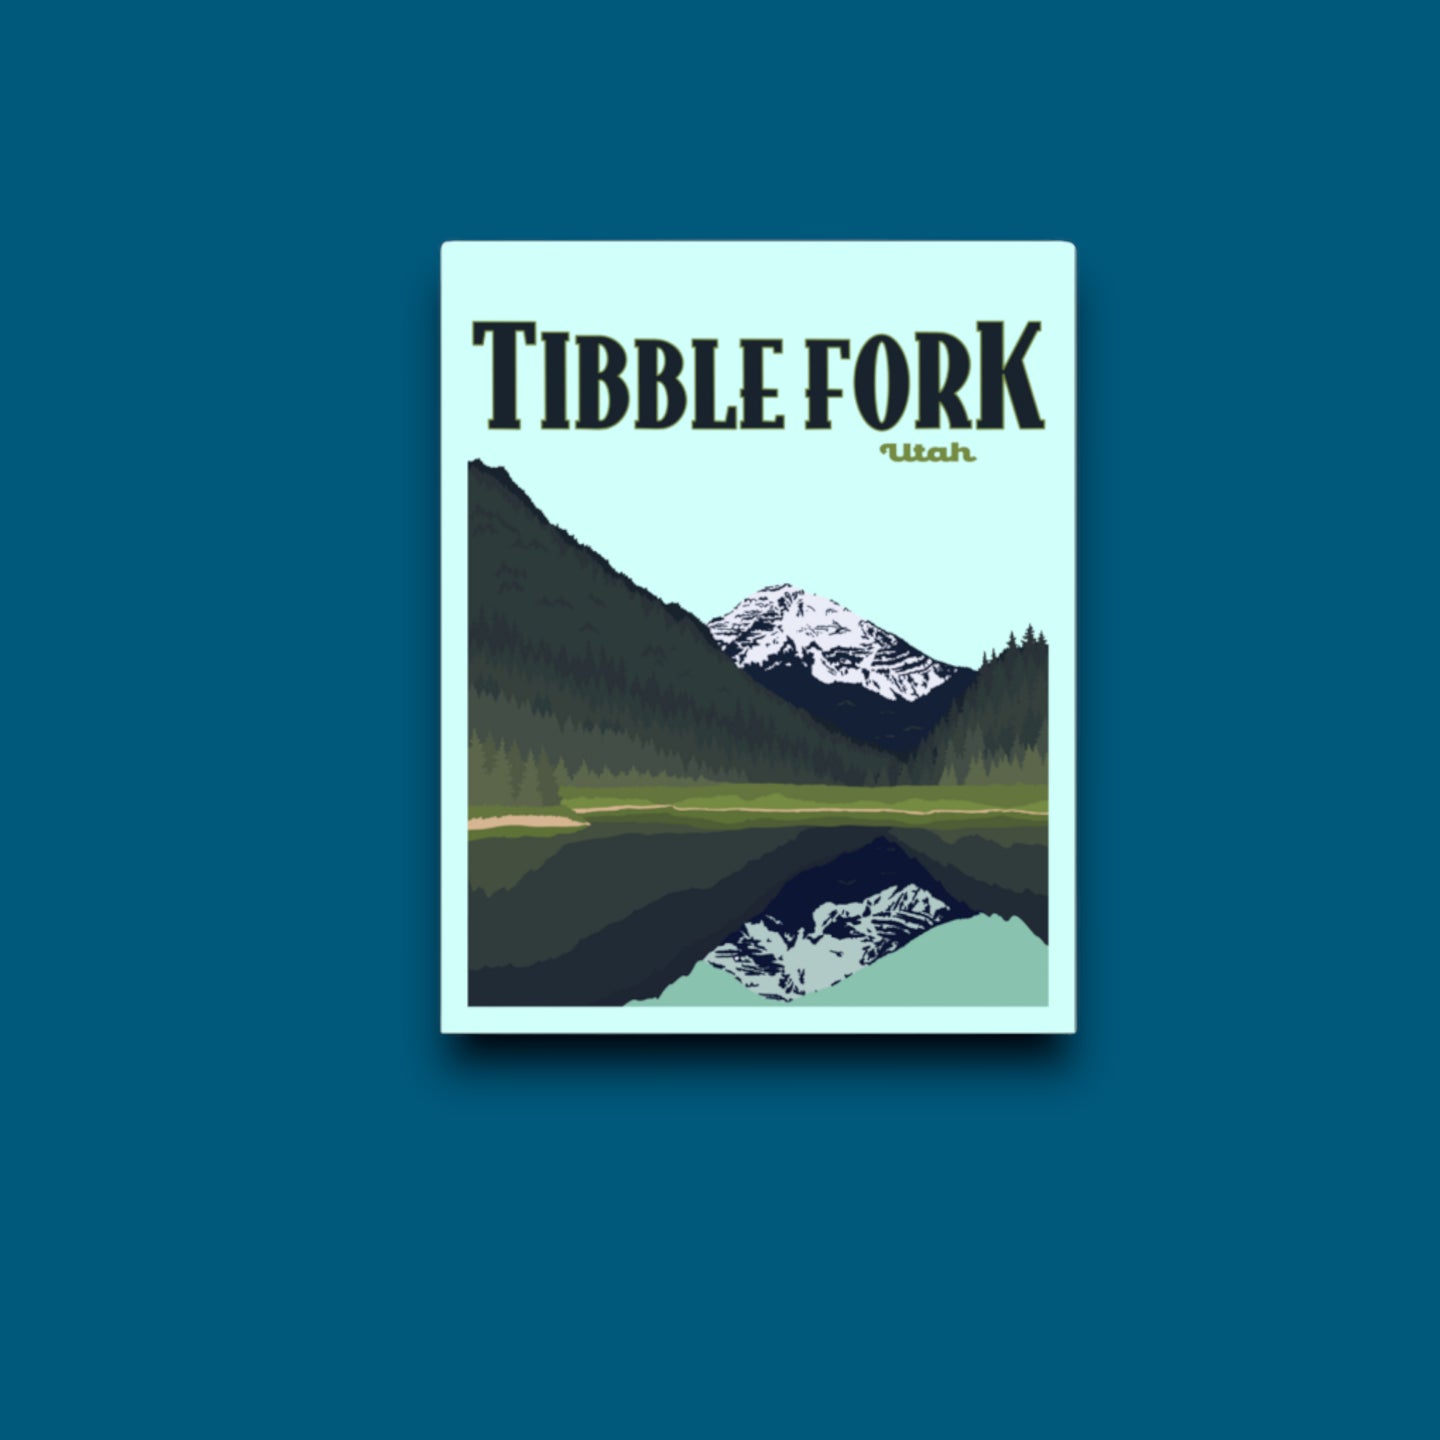 Tibble Fork Utah, Poster Sticker